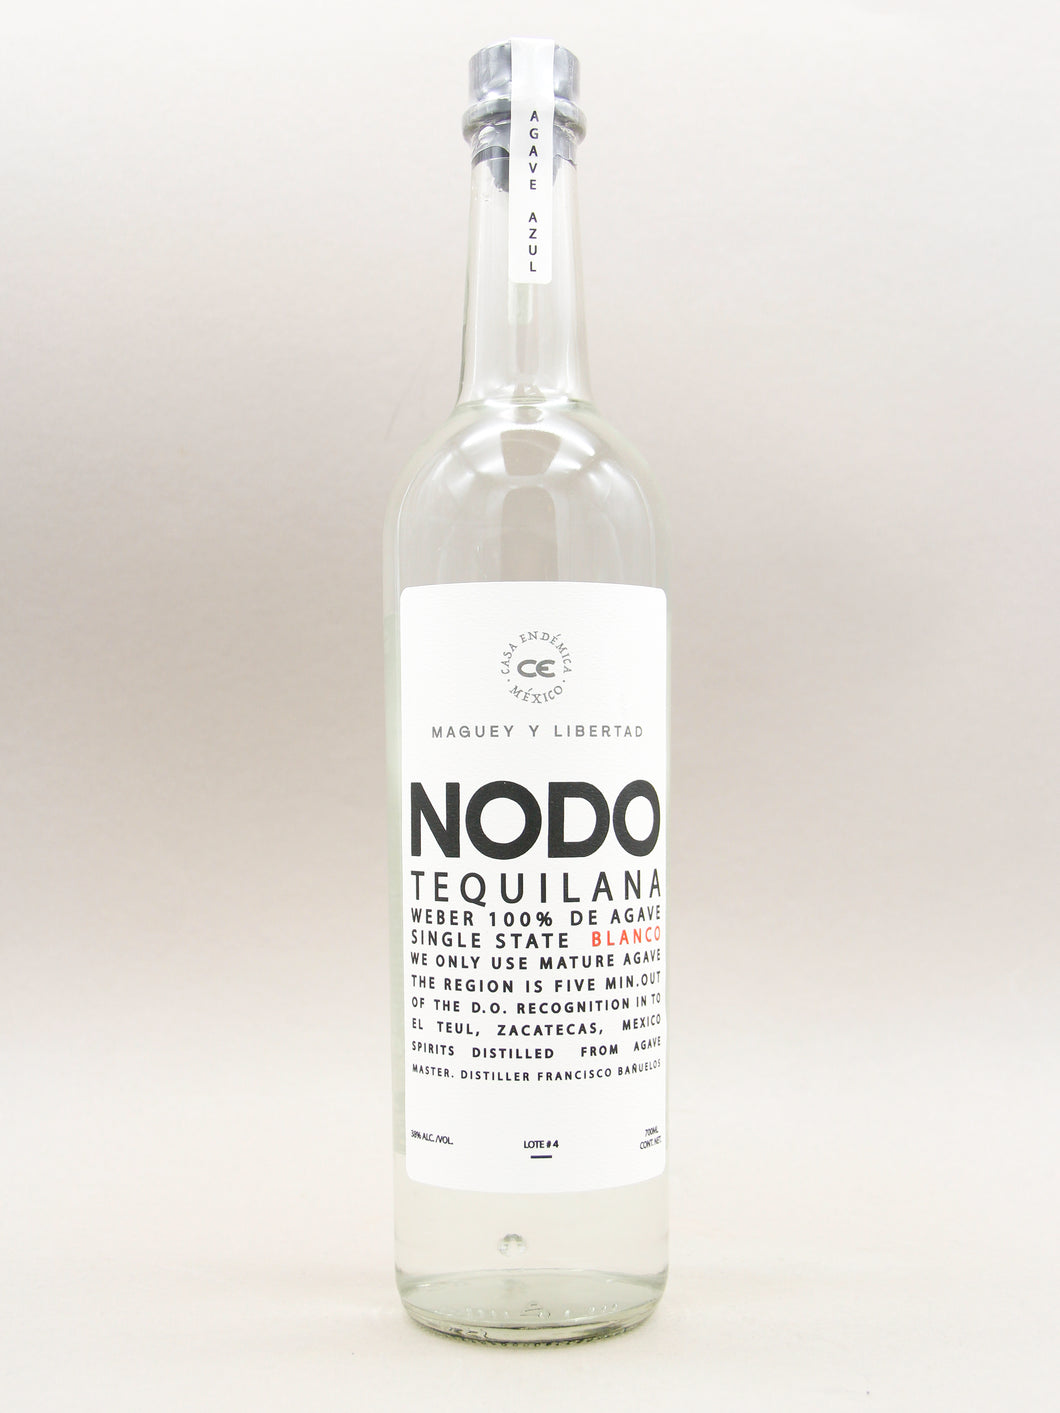 NODO Tequilana Blanco, 100% de Agave, Zacatecas  (38%, 70cl)